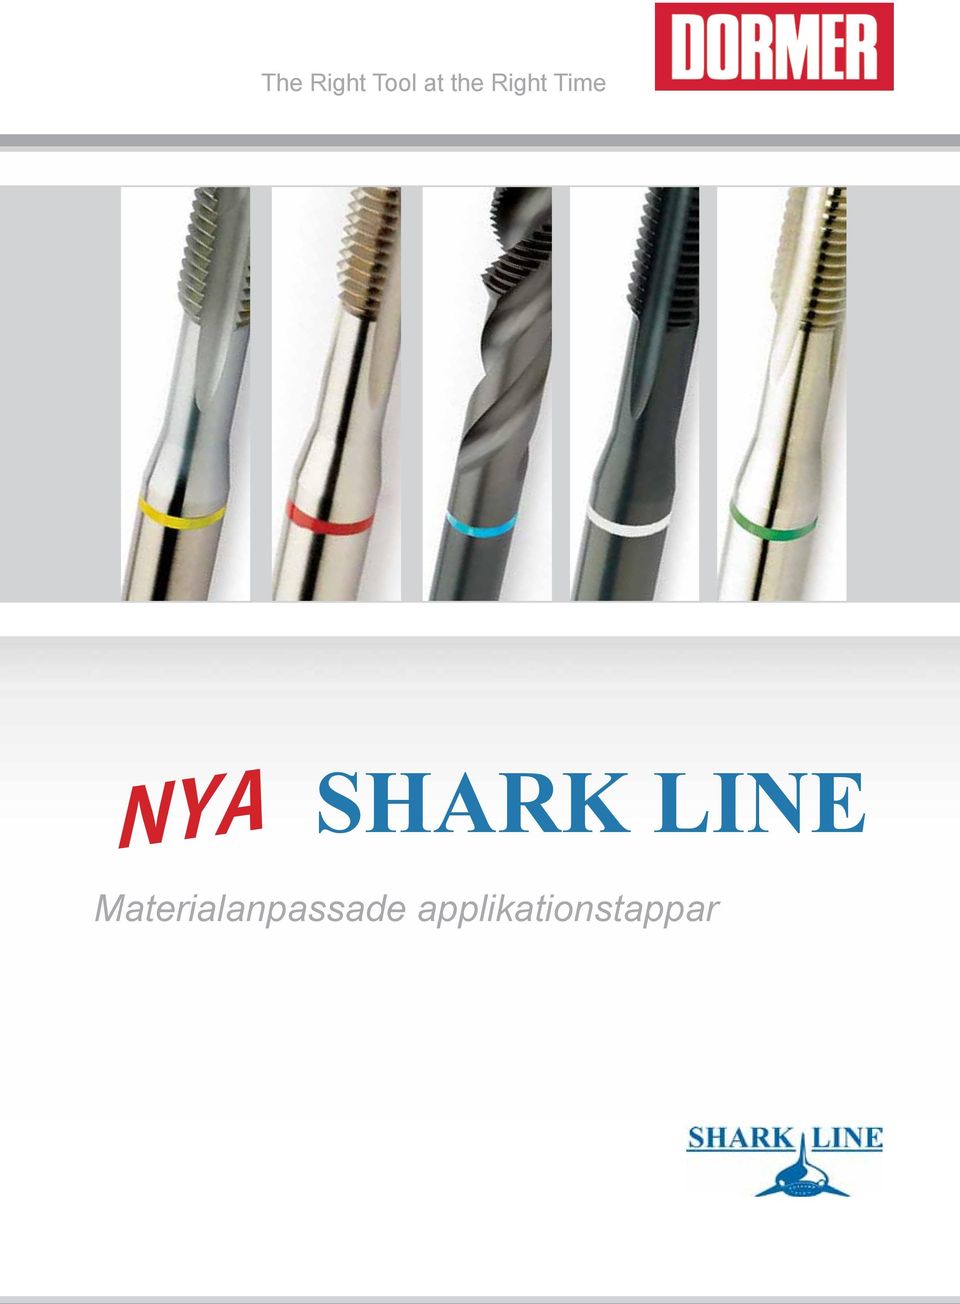 SHARK LINE